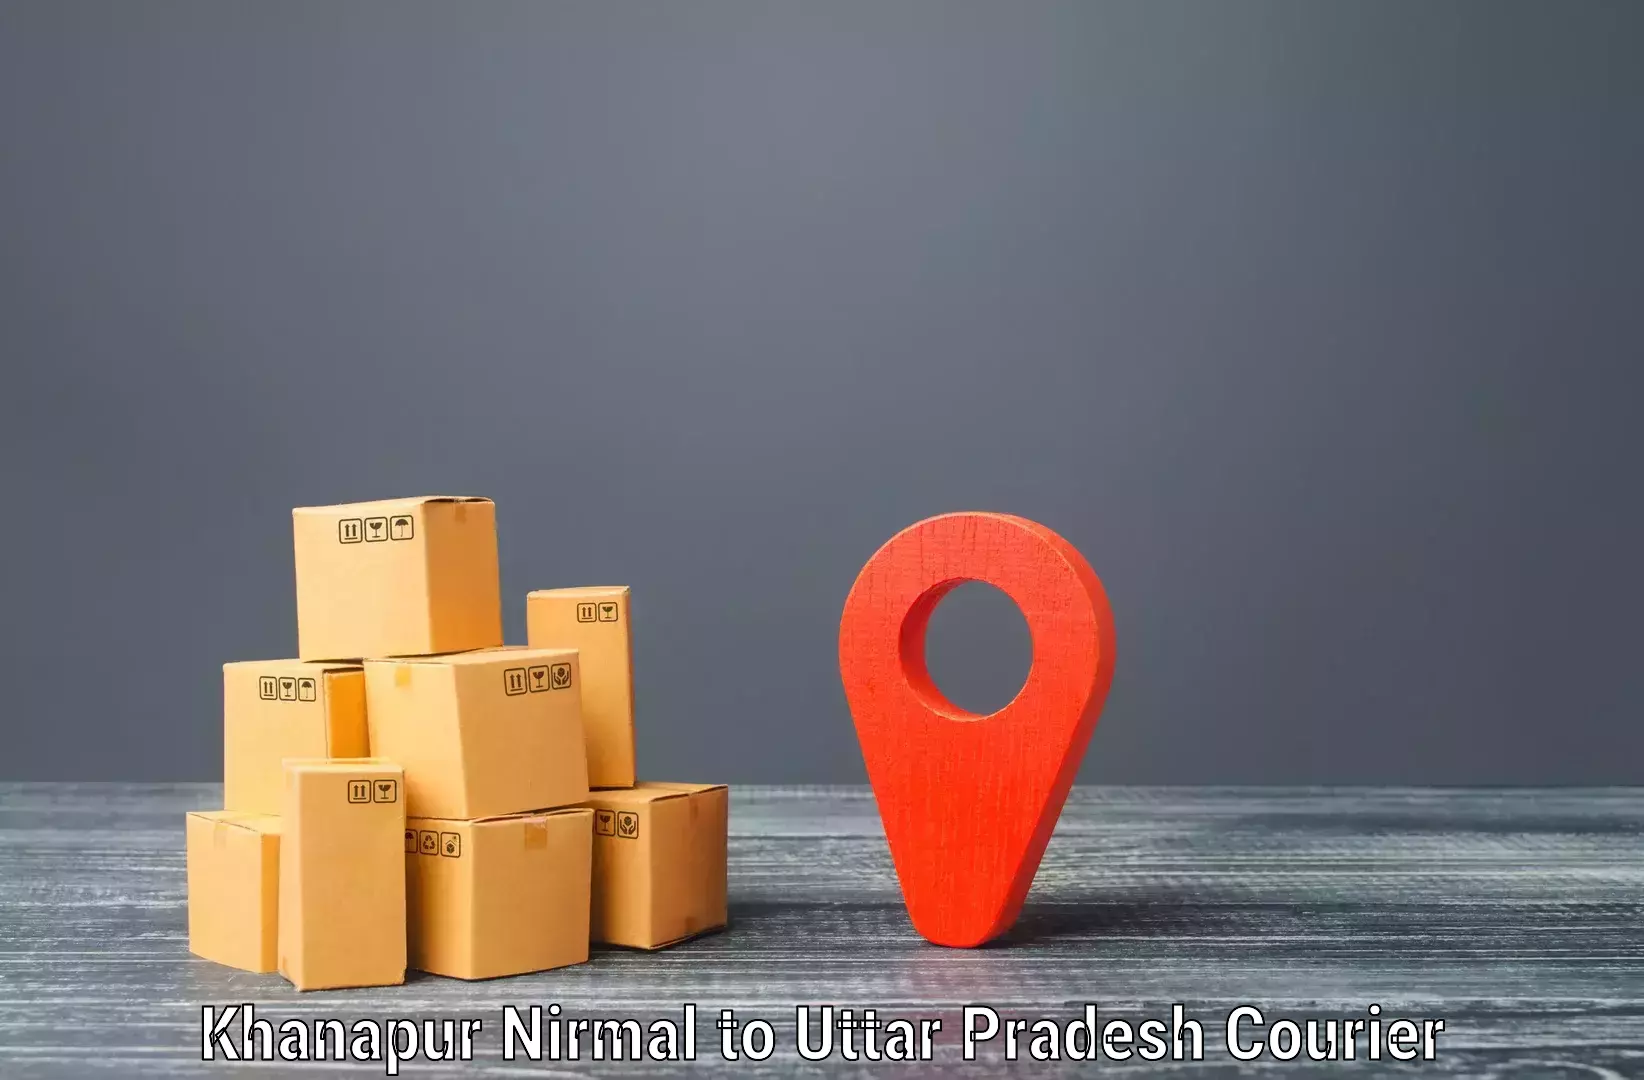 Reliable courier services Khanapur Nirmal to Chandwak